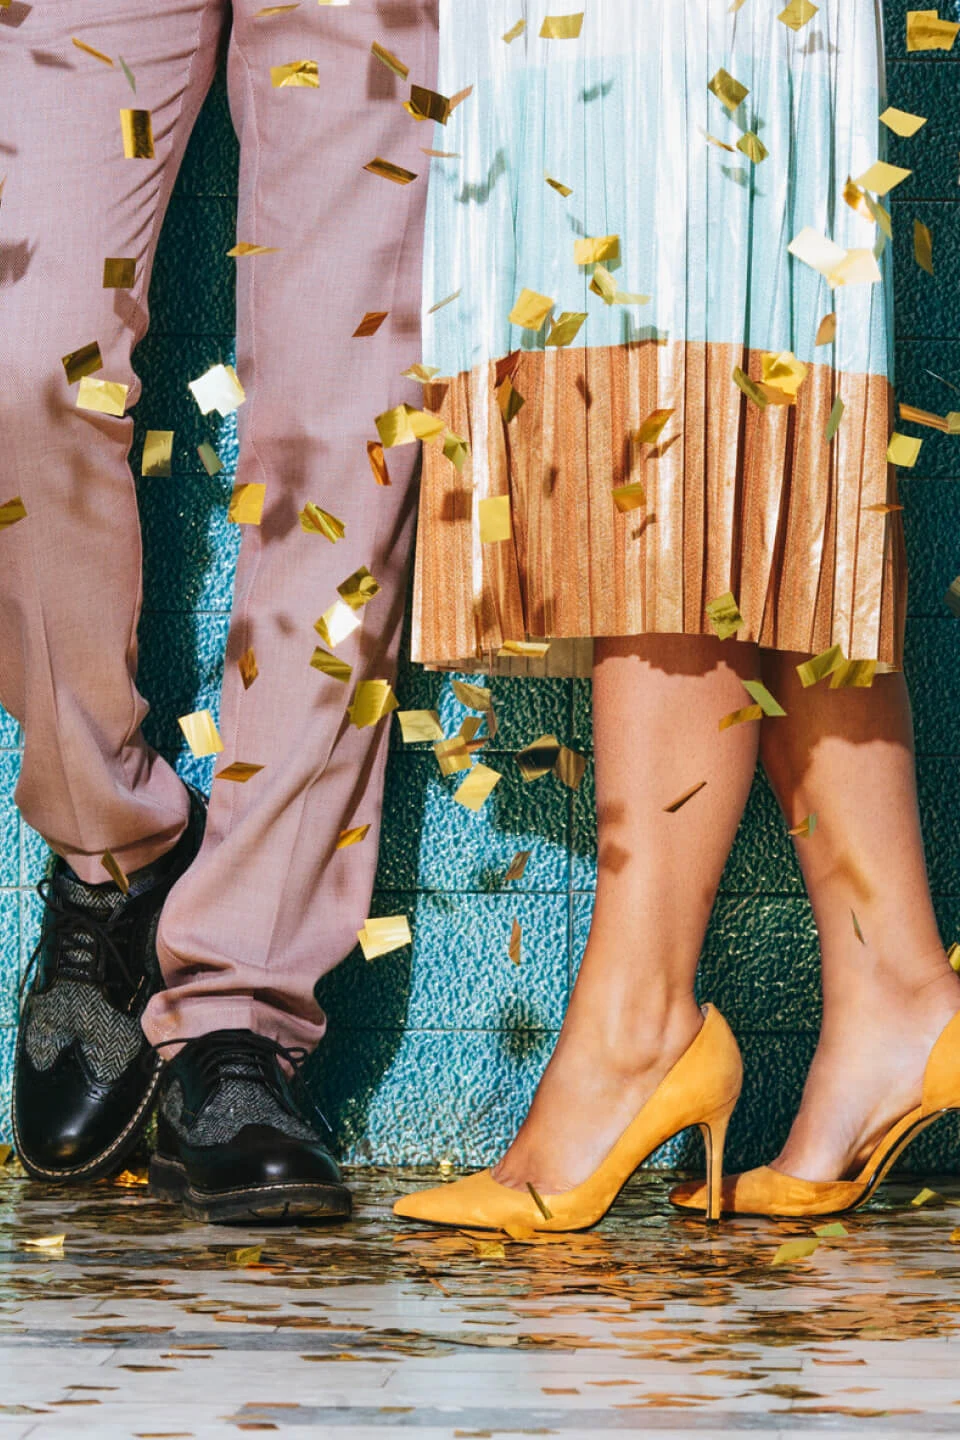 Pernas de duas pessoas próximas uma da outra contra uma parede azul, cercadas por confetes. A pessoa à esquerda veste uma calça na cor salmão e sapato social preto. A pessoa da direita usa uma saia bicolor e sapato de salto amarelo.